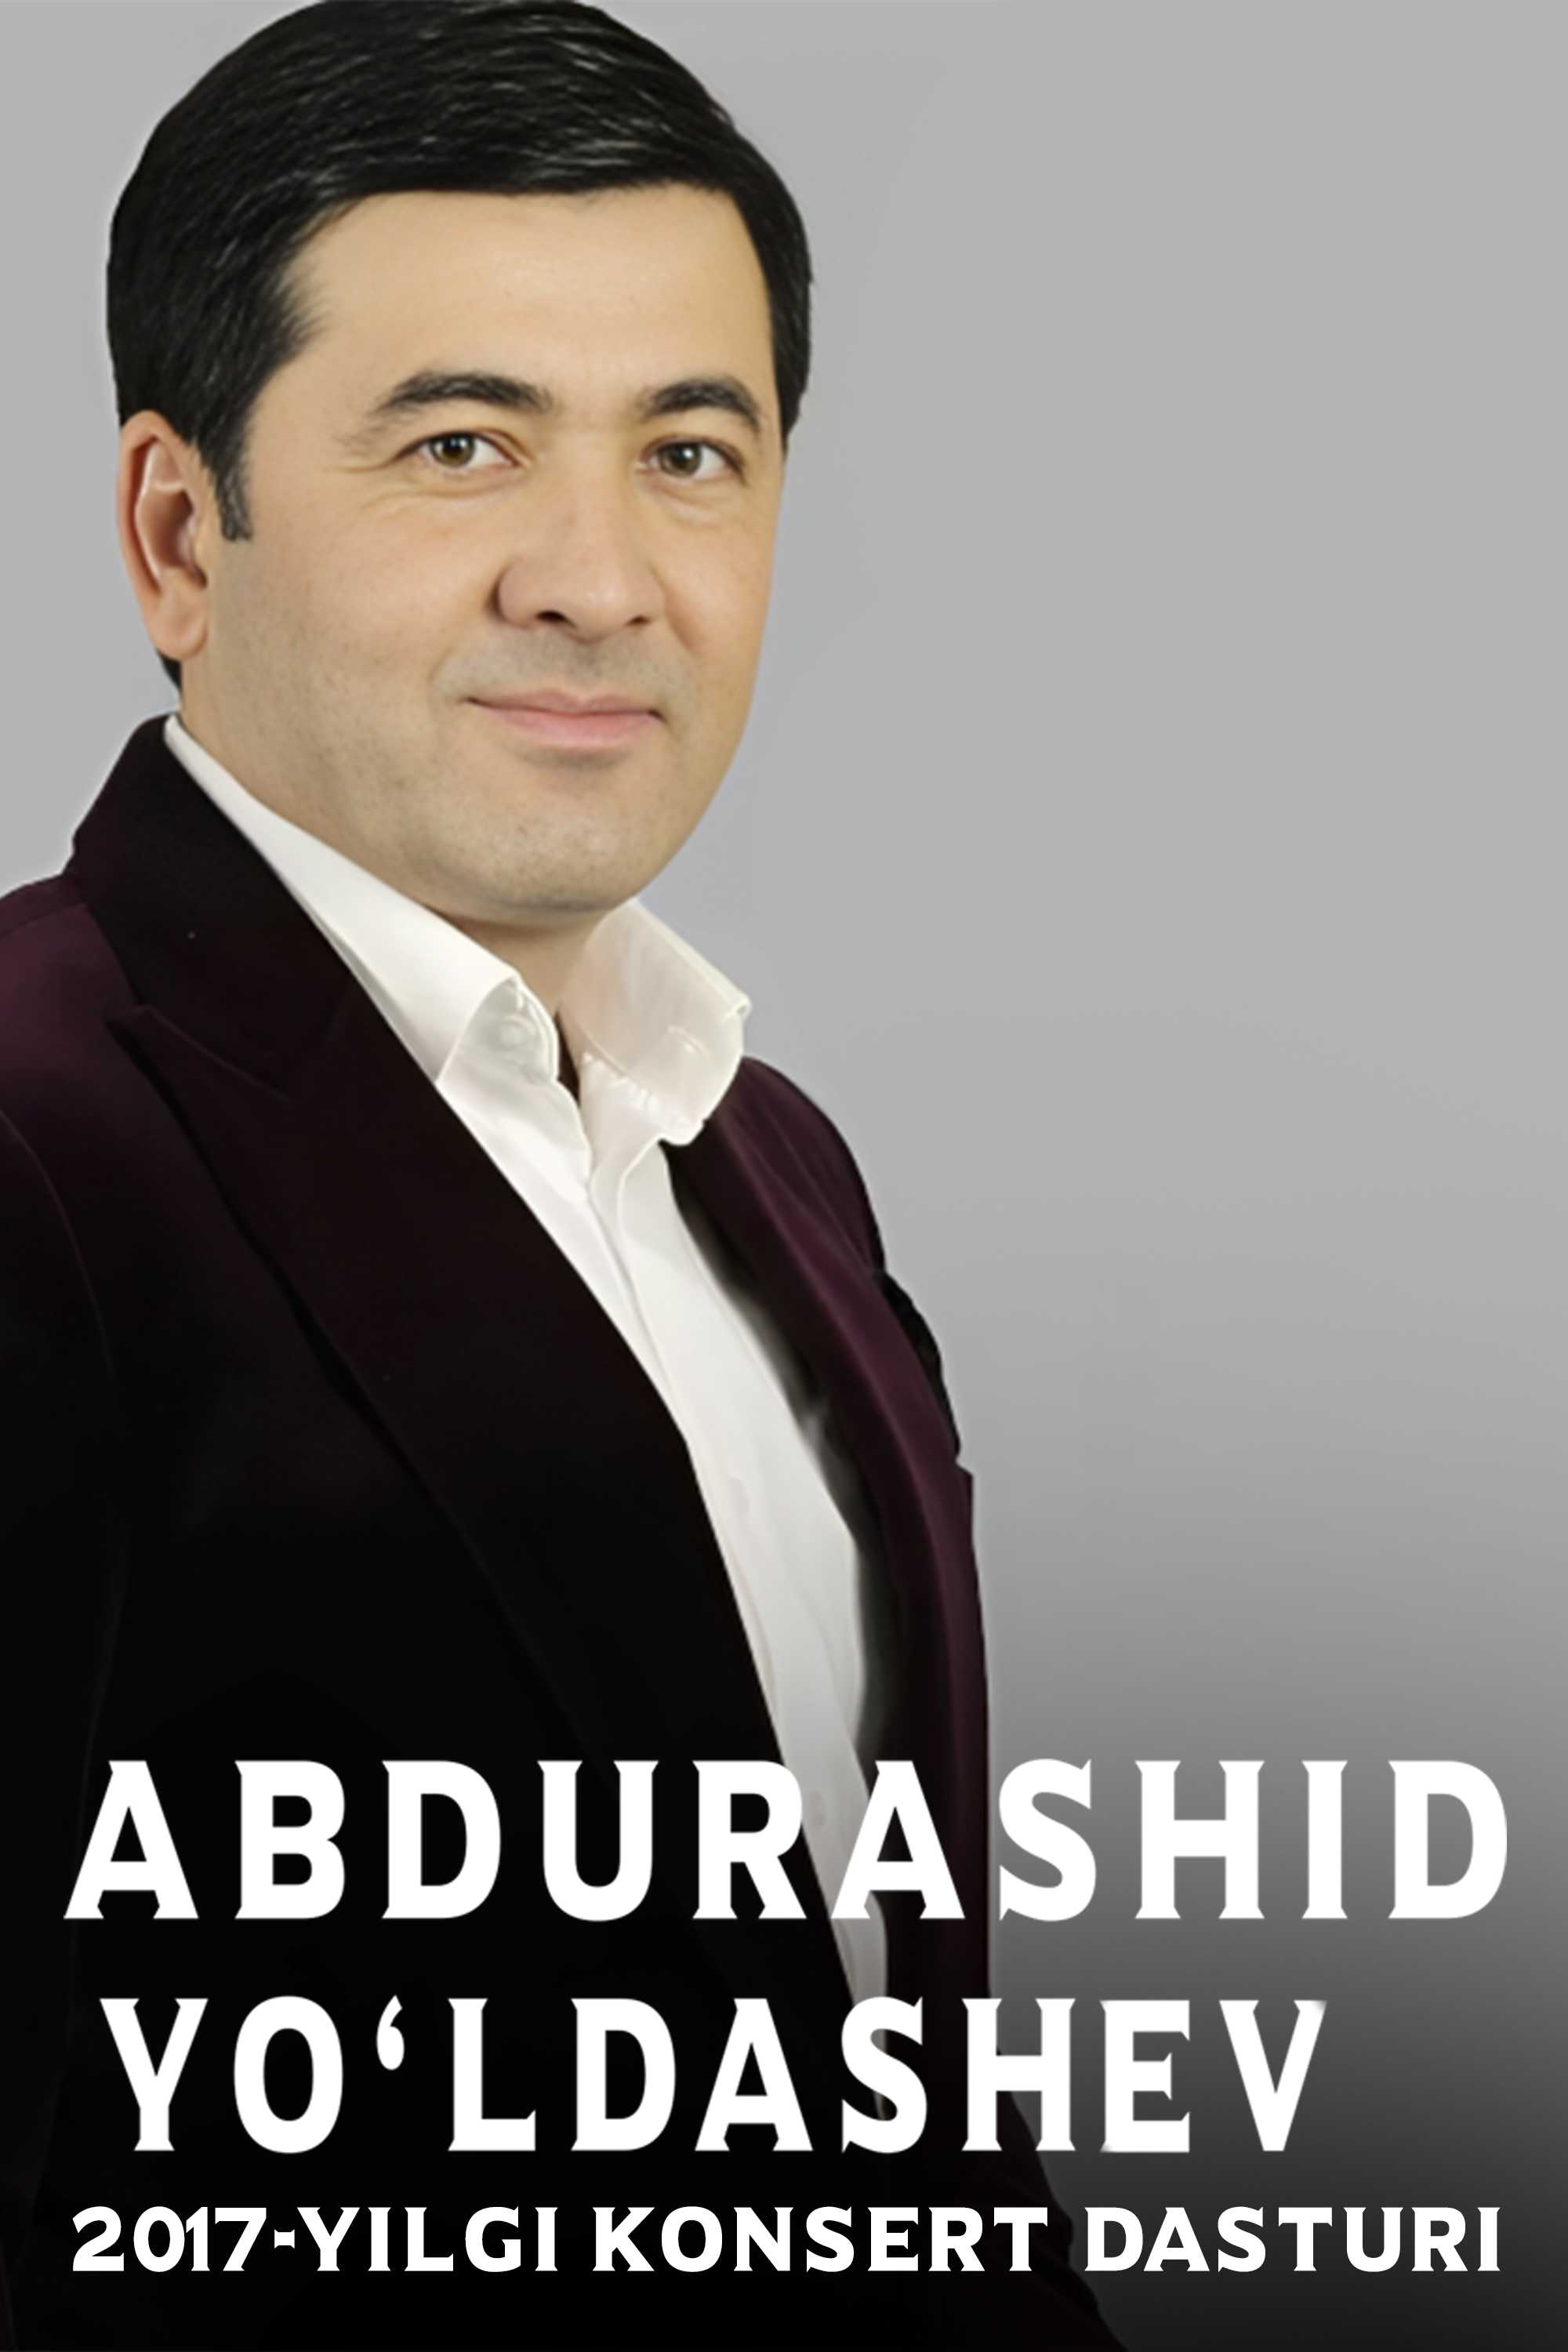 Абдурашид Йўлдошев 2017-йилги концерт дастури